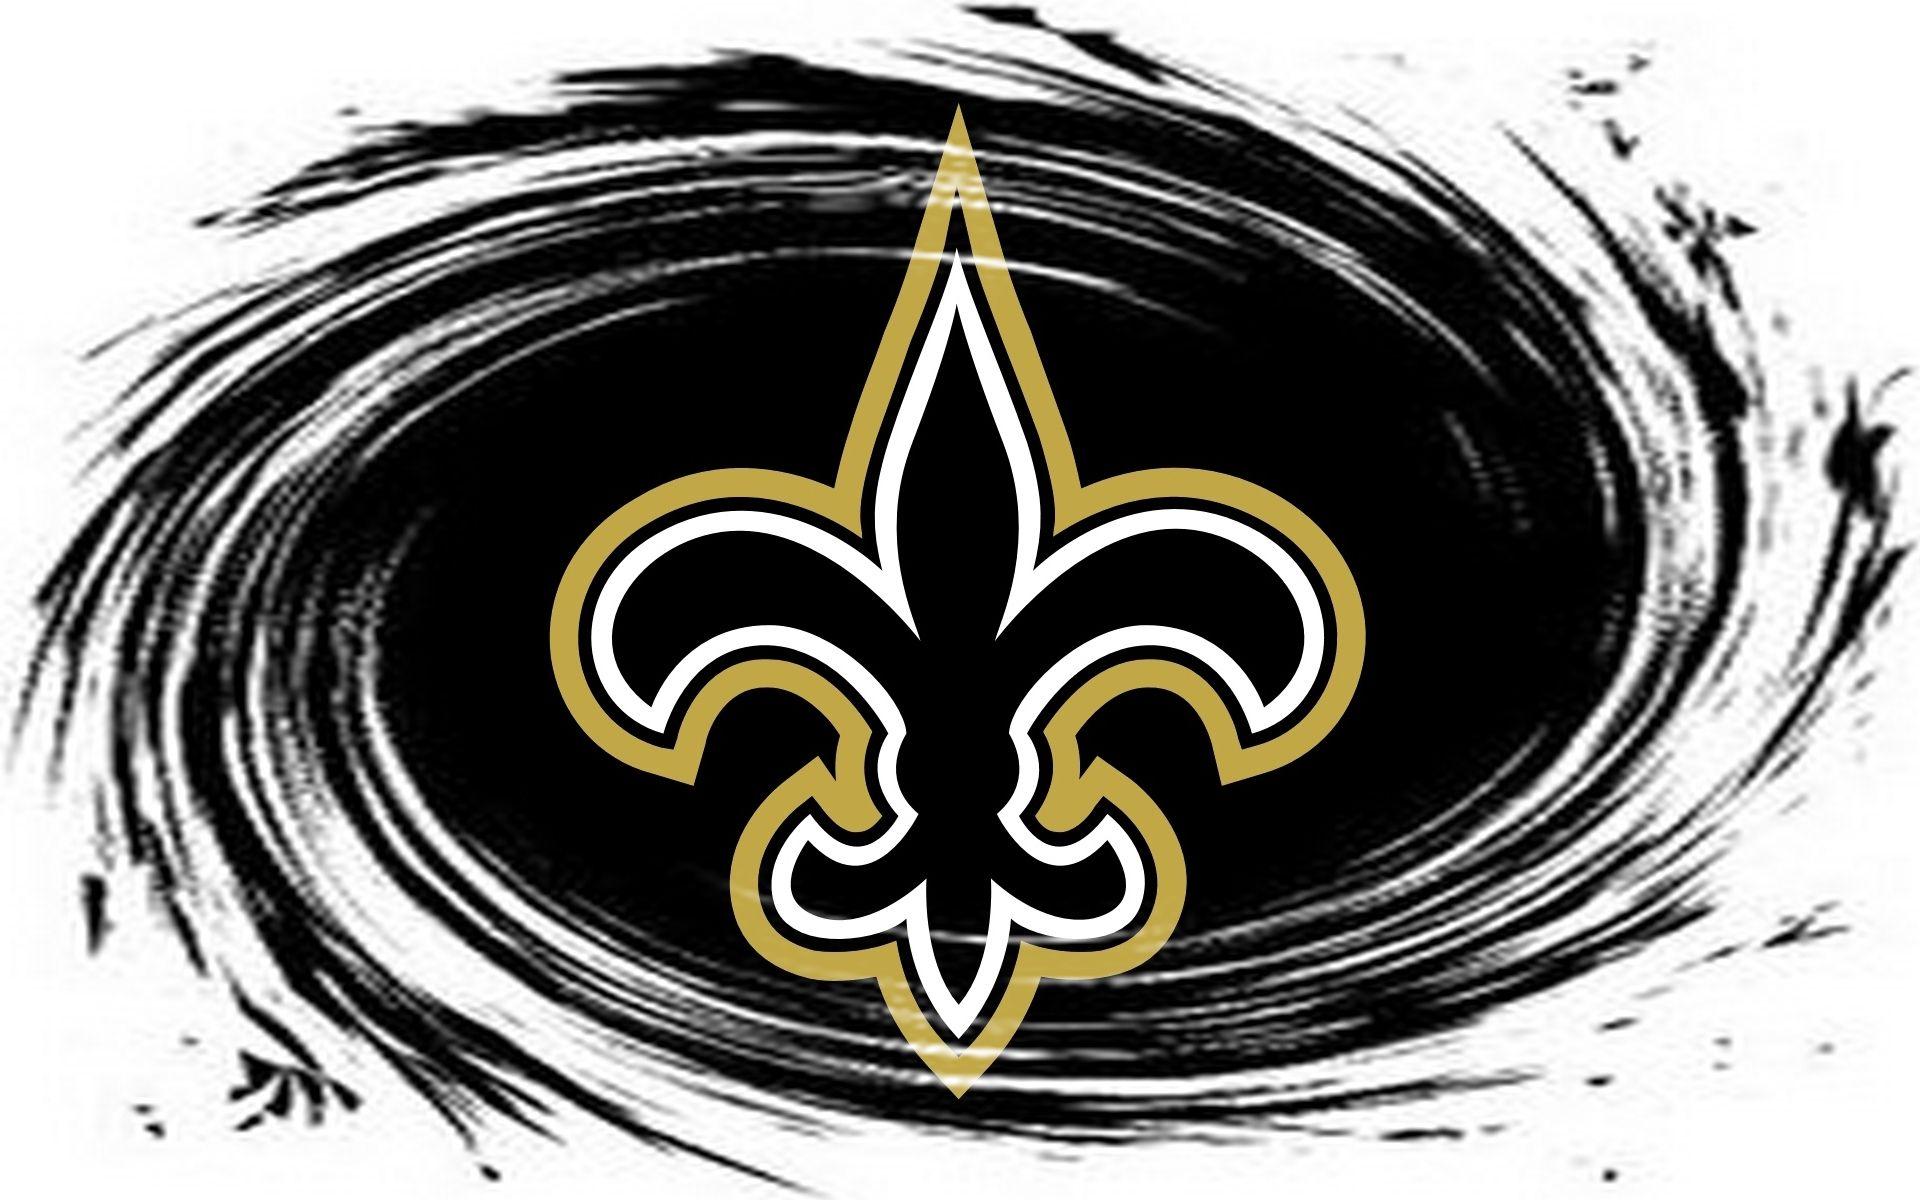 NFL Saints Logo - New Orleans Saints / Nfl 1920x1200 Wide Images